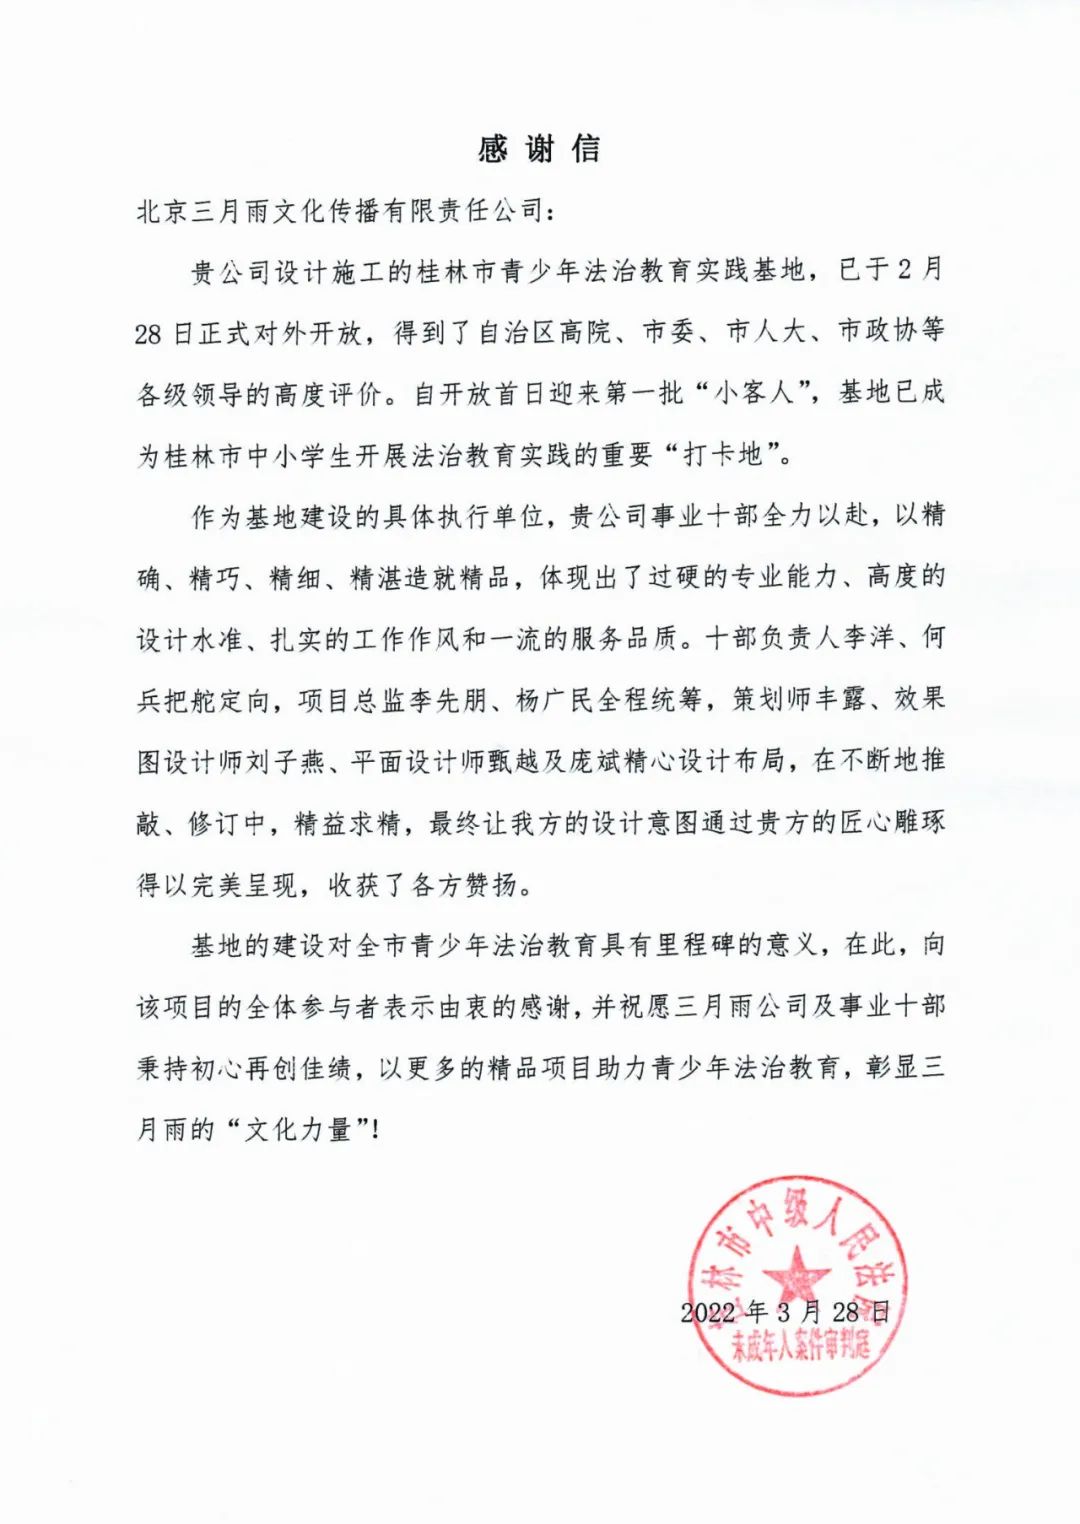 桂林市中级人民法院未成年人案件审判庭的感谢信